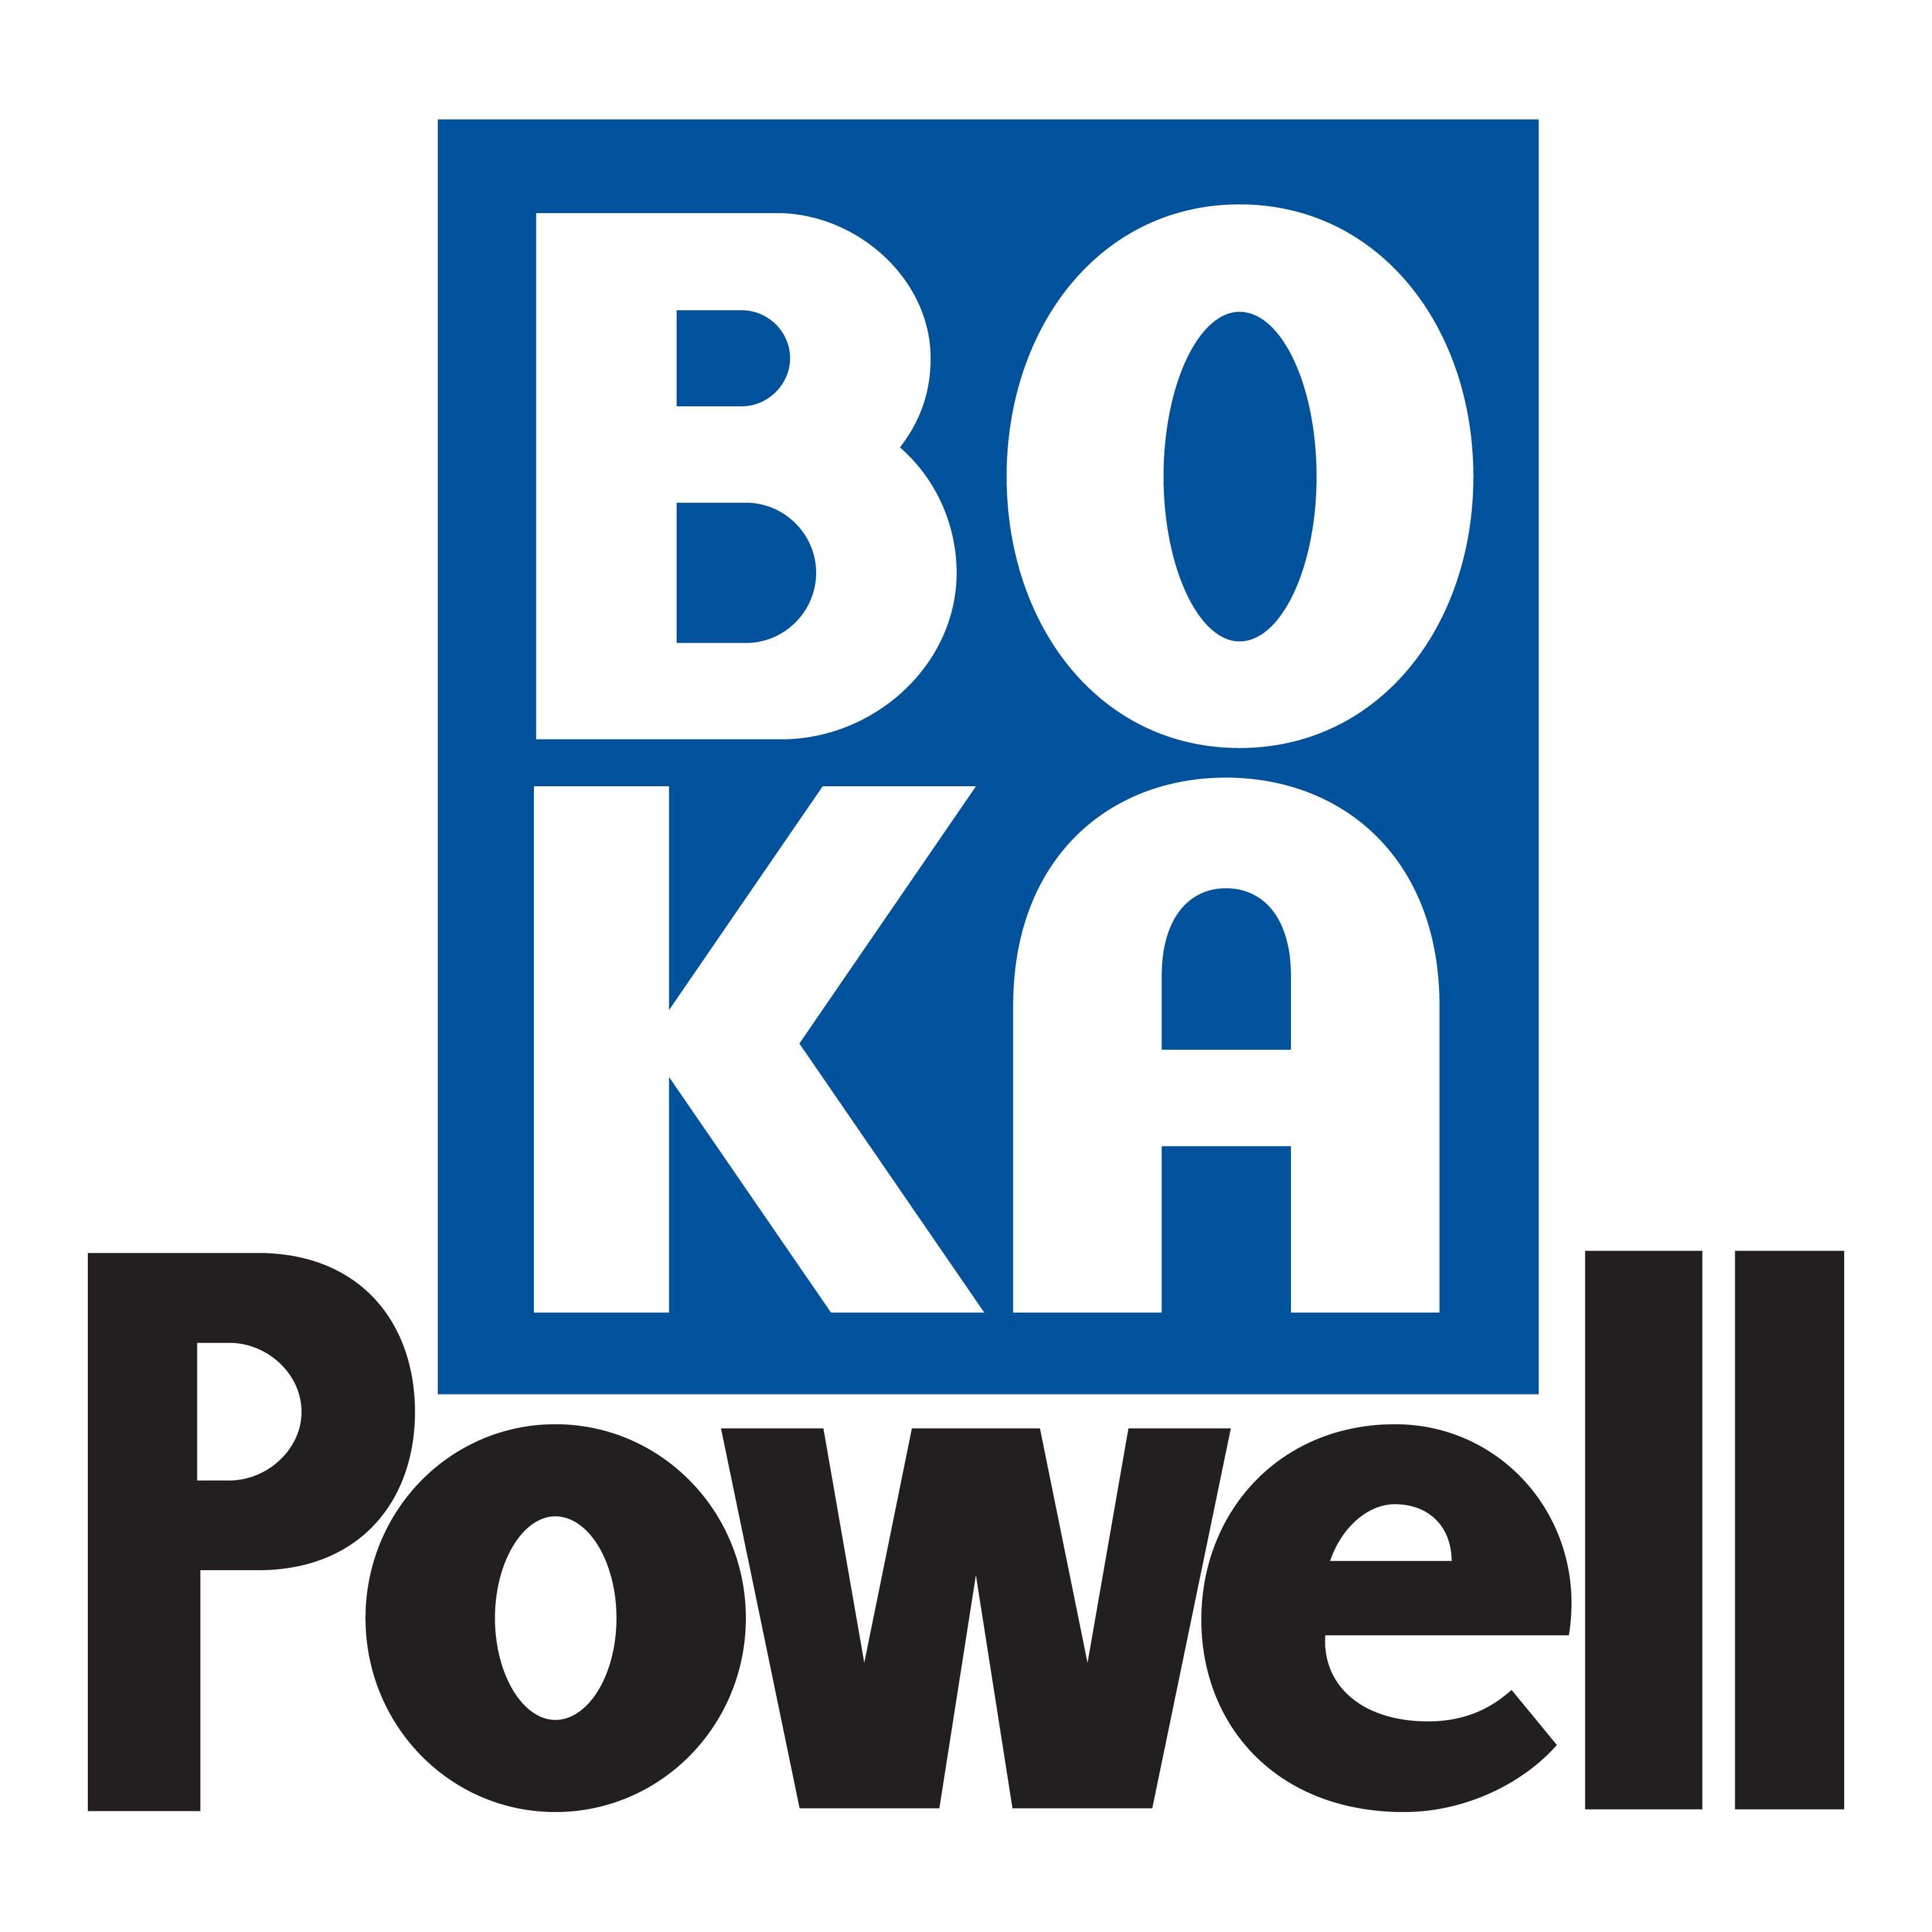 BOKA POWELL Company Logo